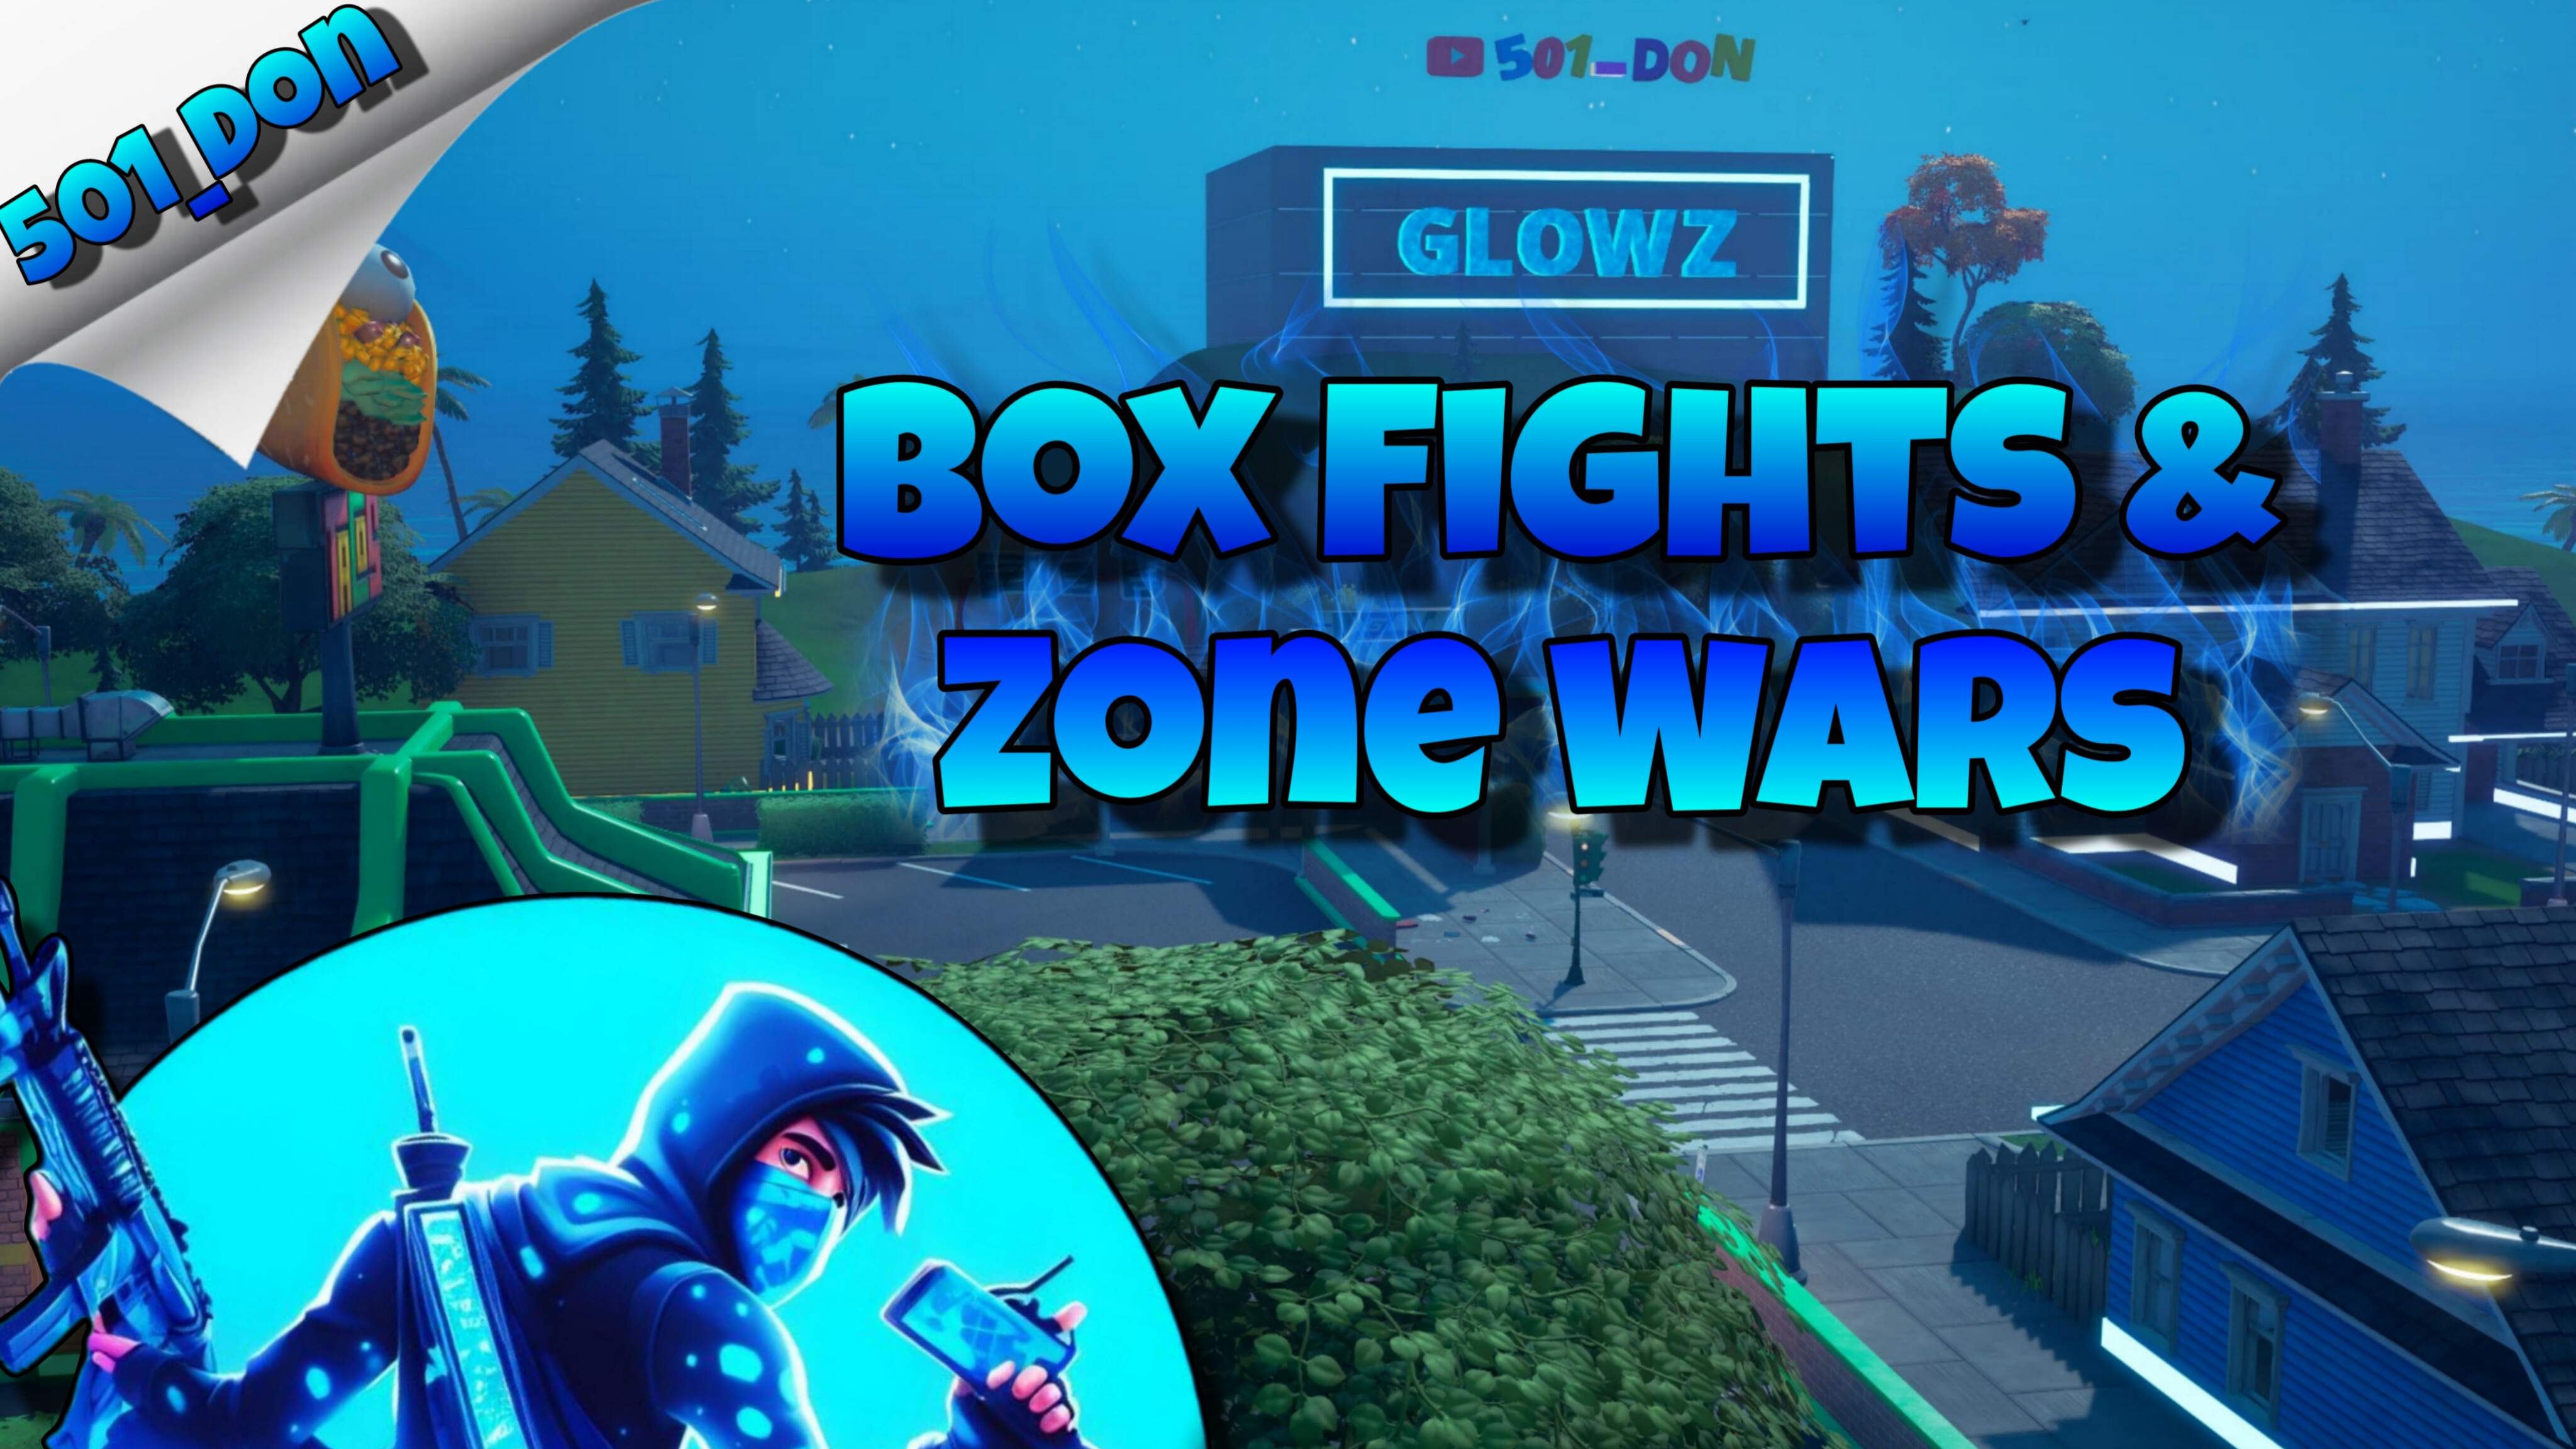 Glowz Box Fights & Zone Wars